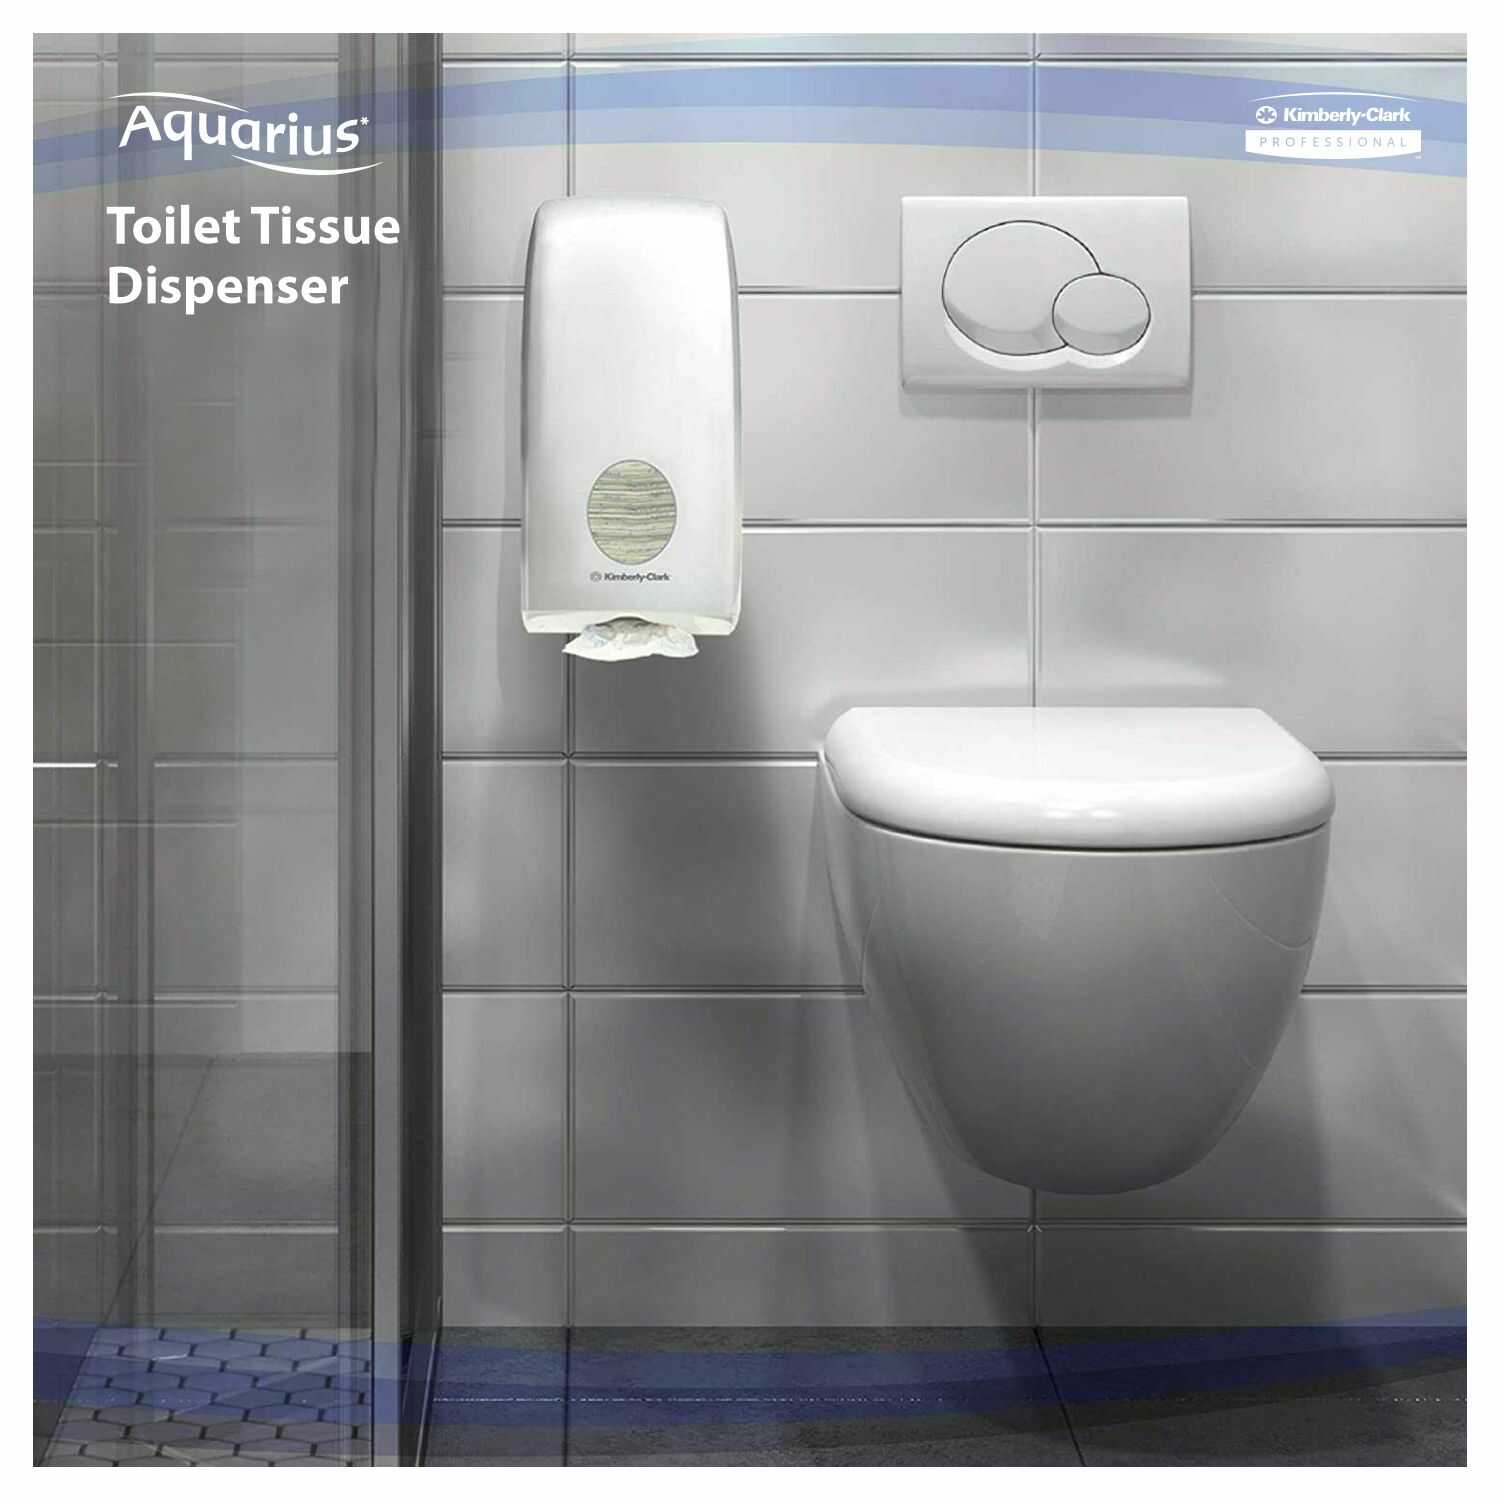 Kimberly Clark* Aquarius* Toilet Tissue Dispenser, 69460 (Pack of 1)